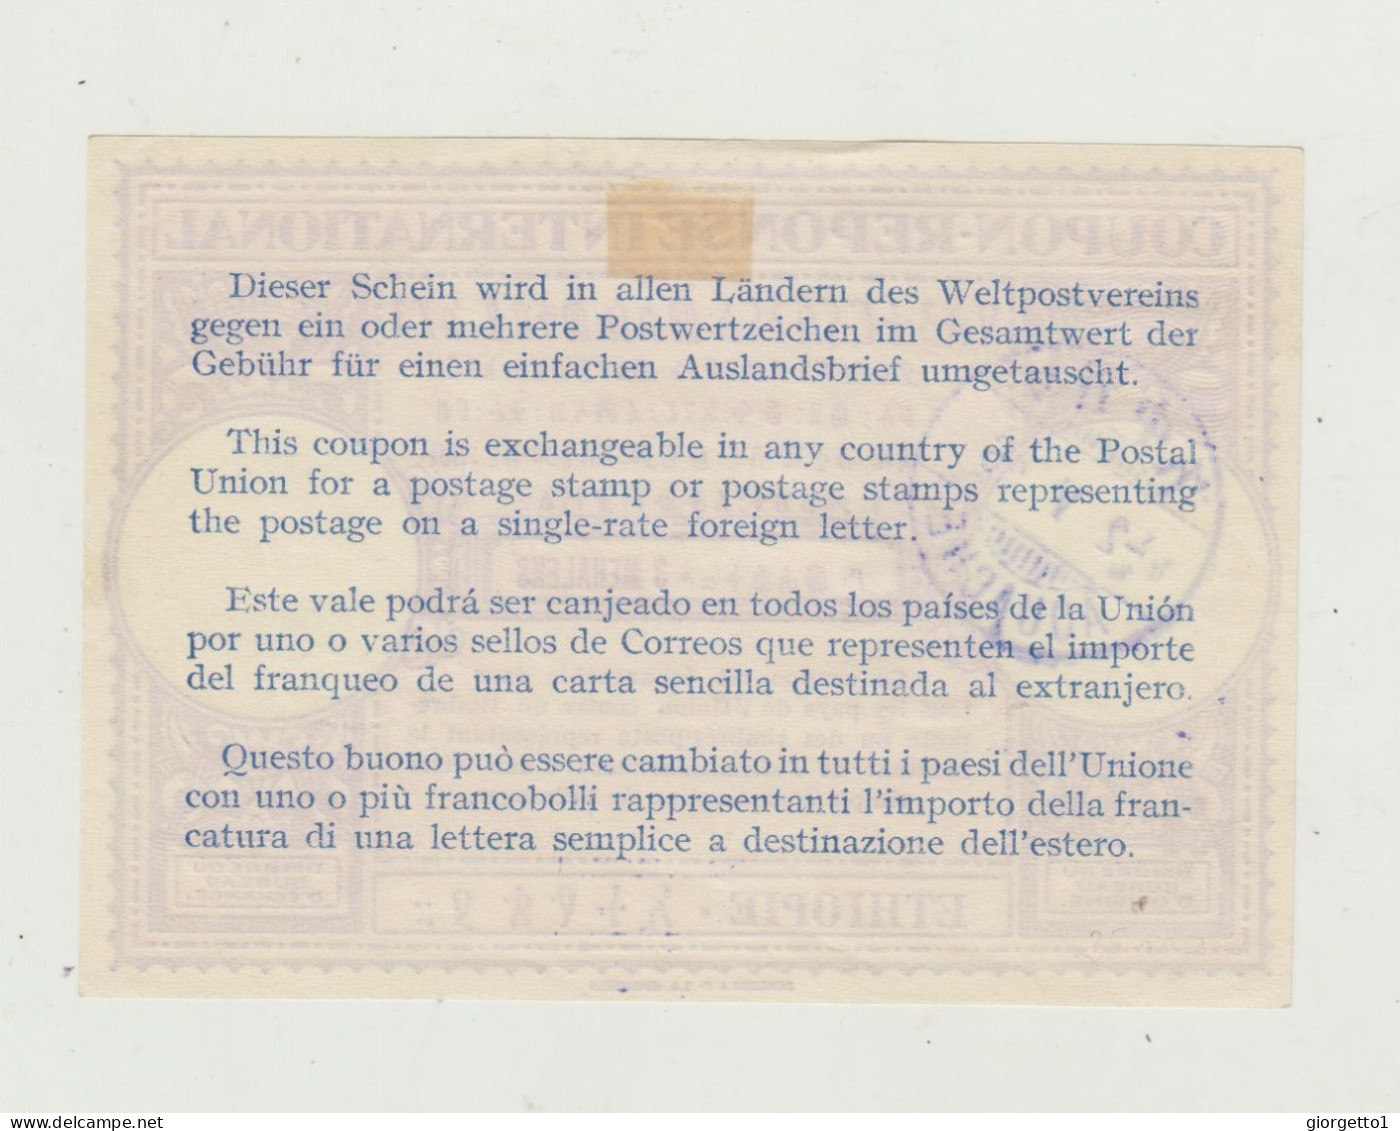 TAGLIANDO - RICEVUTA - COUPON  POSTALE PER FRANCOBOLLI SPEDIZIONE INTERNAZIONALE - ETIOPIA -DEL 1936 - AFRICA ORIENTALE - Marcophilie